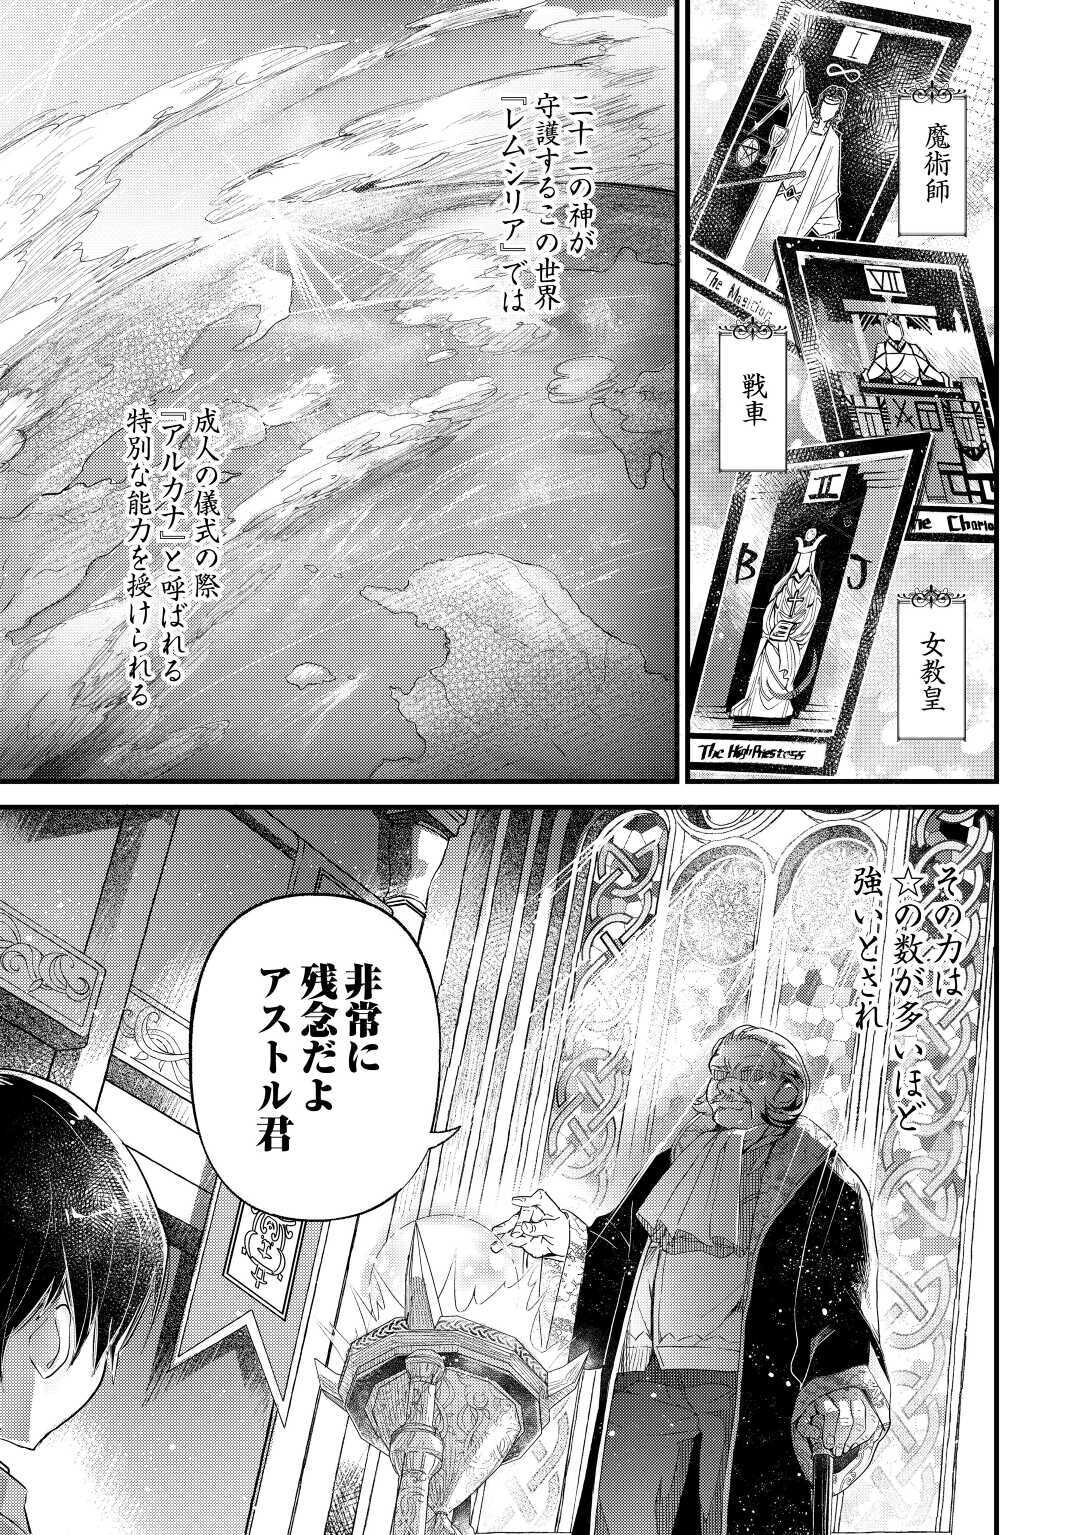 Ochikobore 1 Mahou Tsukai wa, Kyou mo Muishiki ni Cheat o Tsukau - Chapter 1 - Page 1